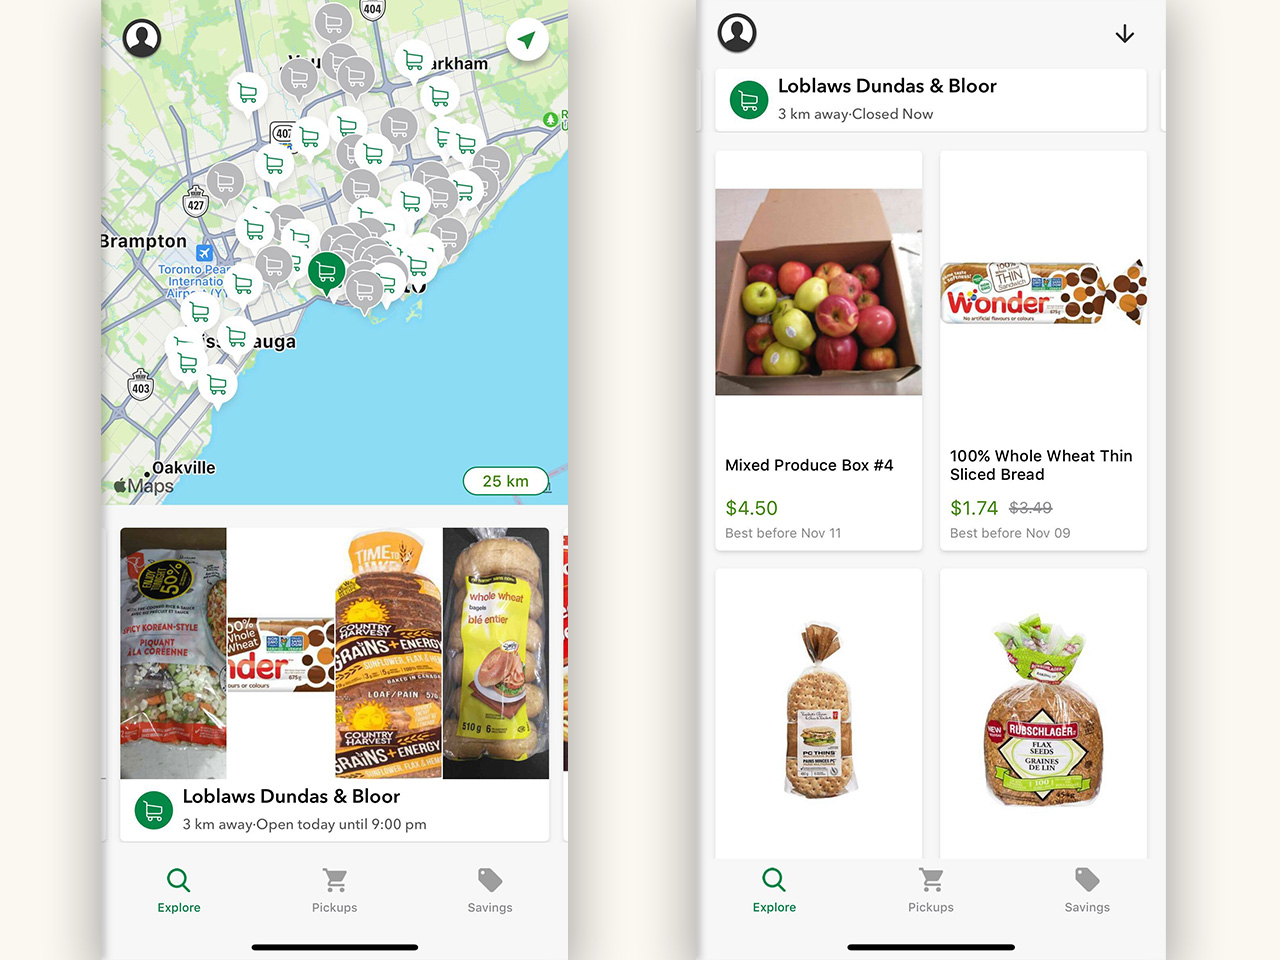 Screen shots of Flashfood food waste app